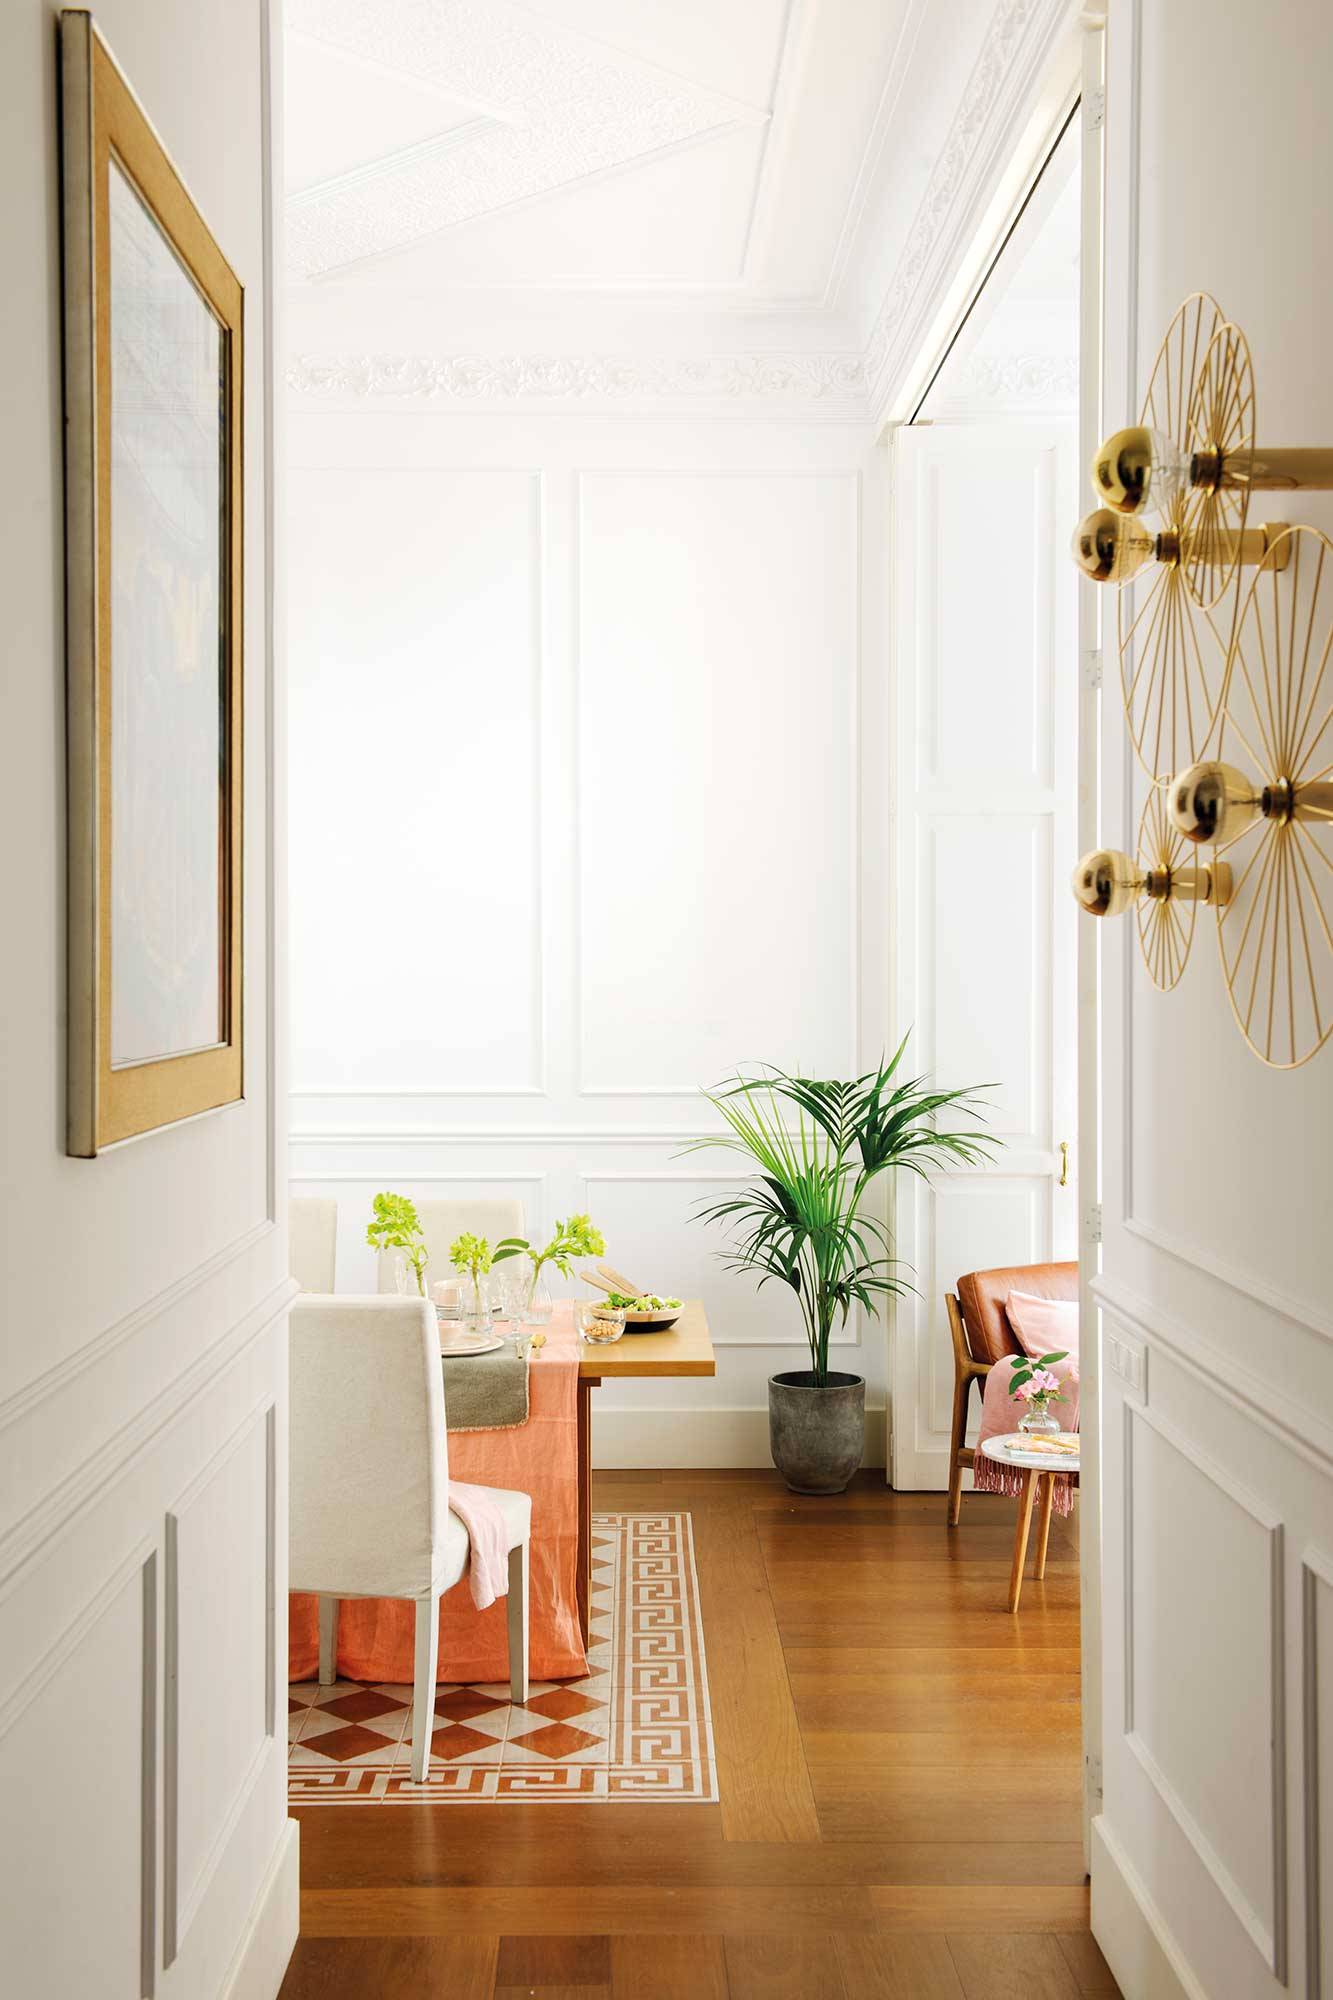 Pasillo con apliques dorados metálicos y molduras decorativas en la pared en color blanco.